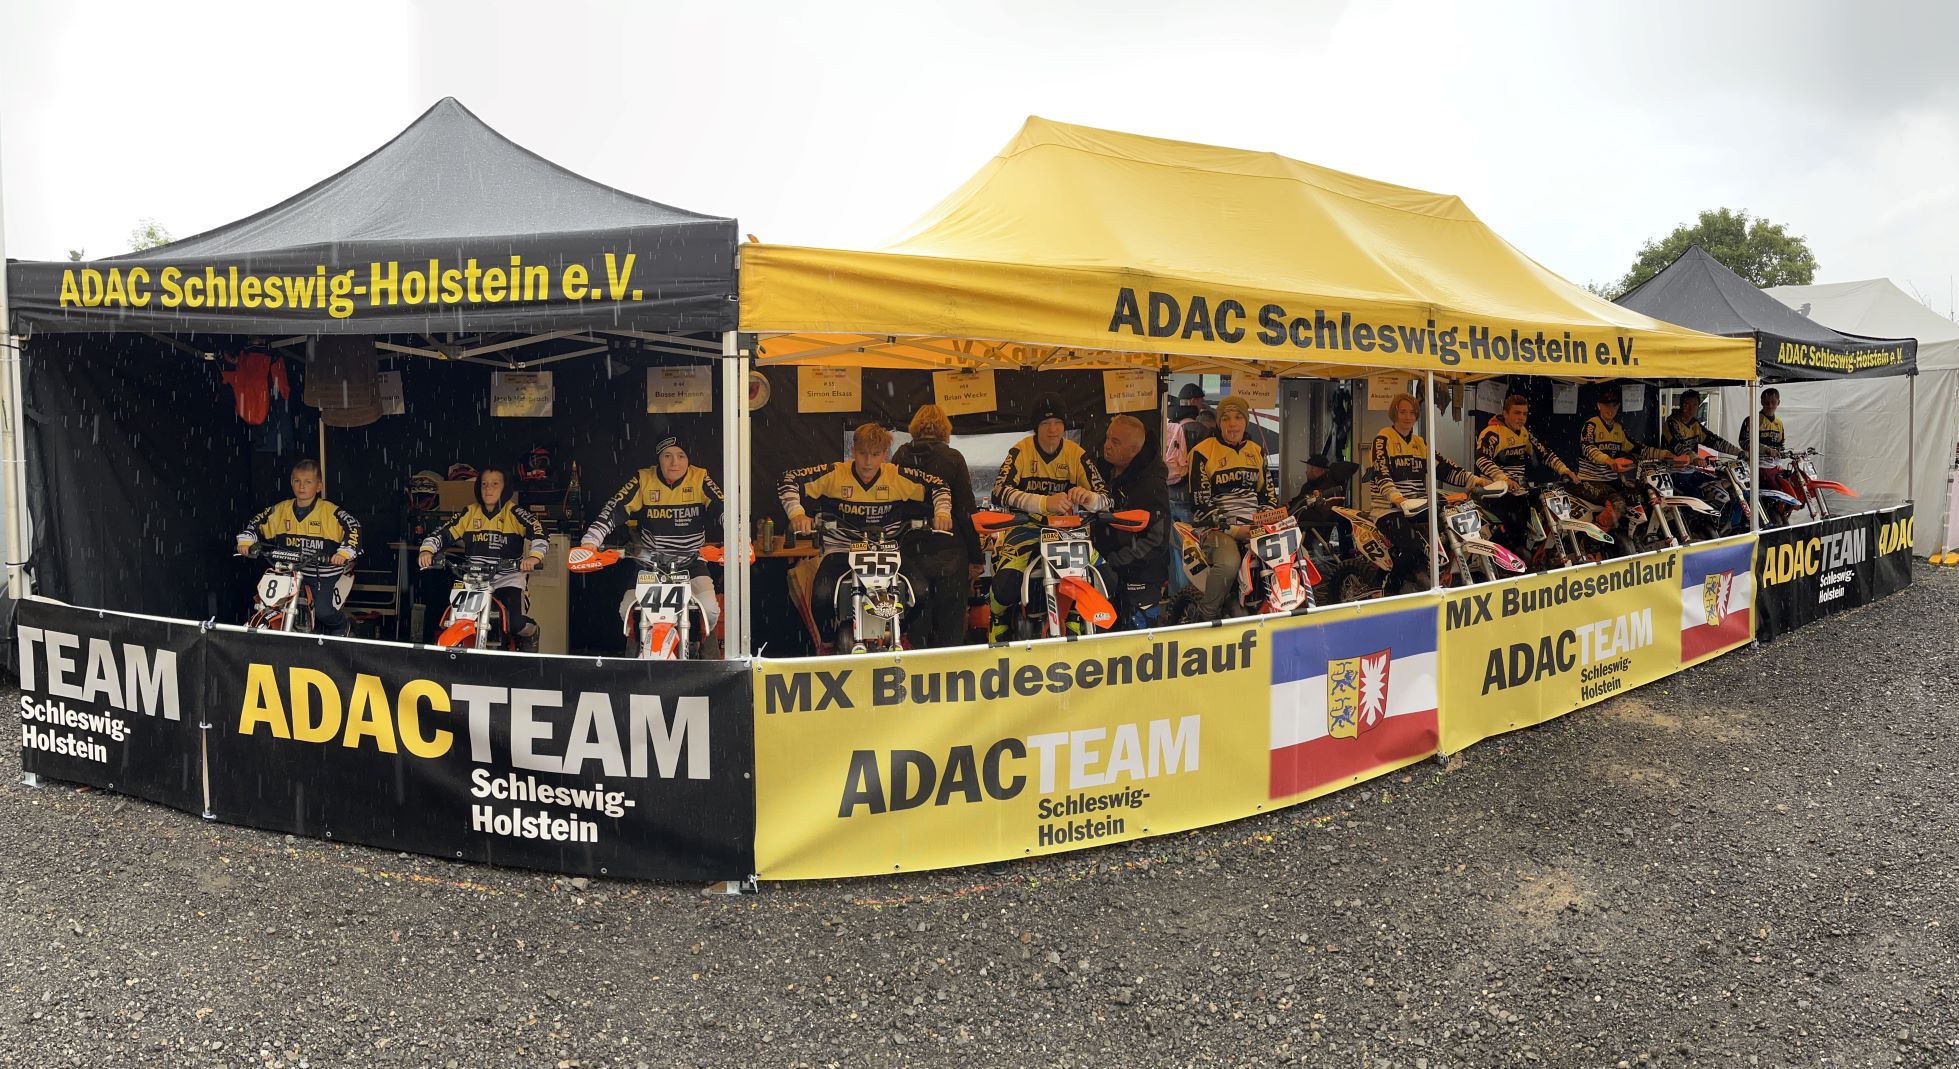 ADAC MX Bundesendlauf mit dem Team des ADAC Schleswig-Holstein